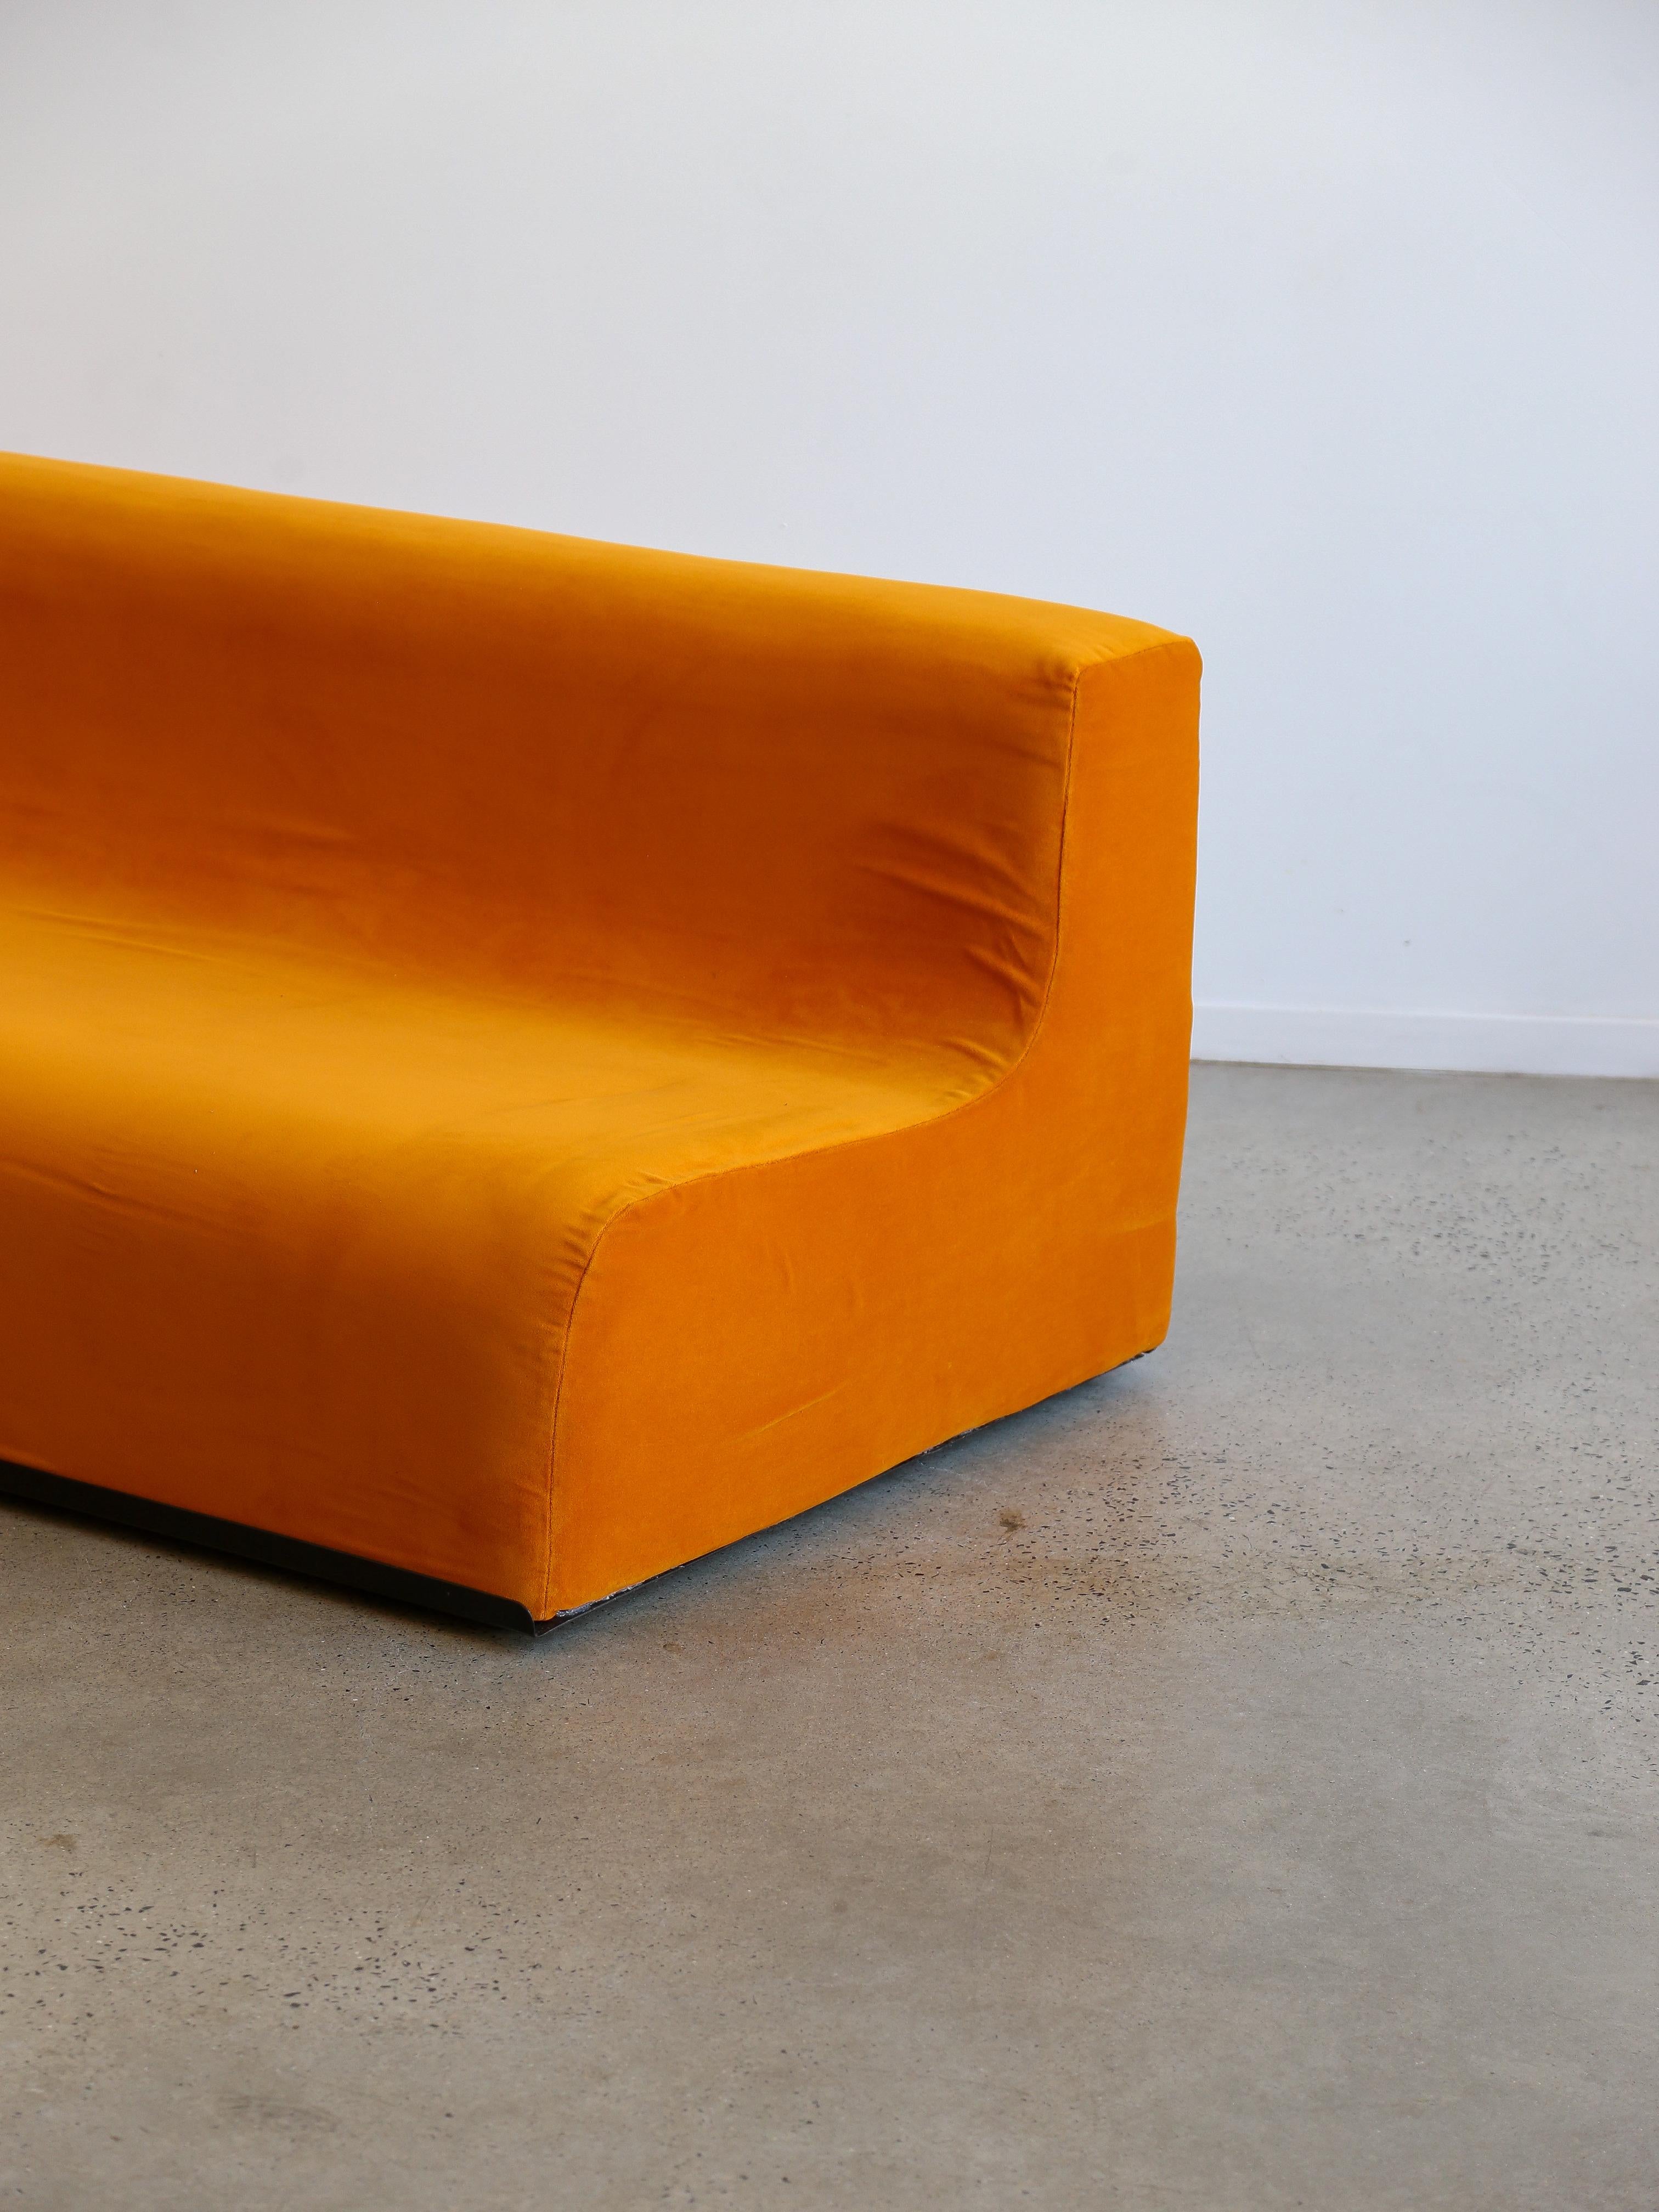 Space Age Dreisitzer-Sofa aus orangefarbenem Samt und Abs-Kunststoffsockel.

Das Konzept des Weltraumdesigns und -möbels wurde Mitte des 20. Jahrhunderts populär, insbesondere während des Wettlaufs um den Weltraum und der Ära des Space Age